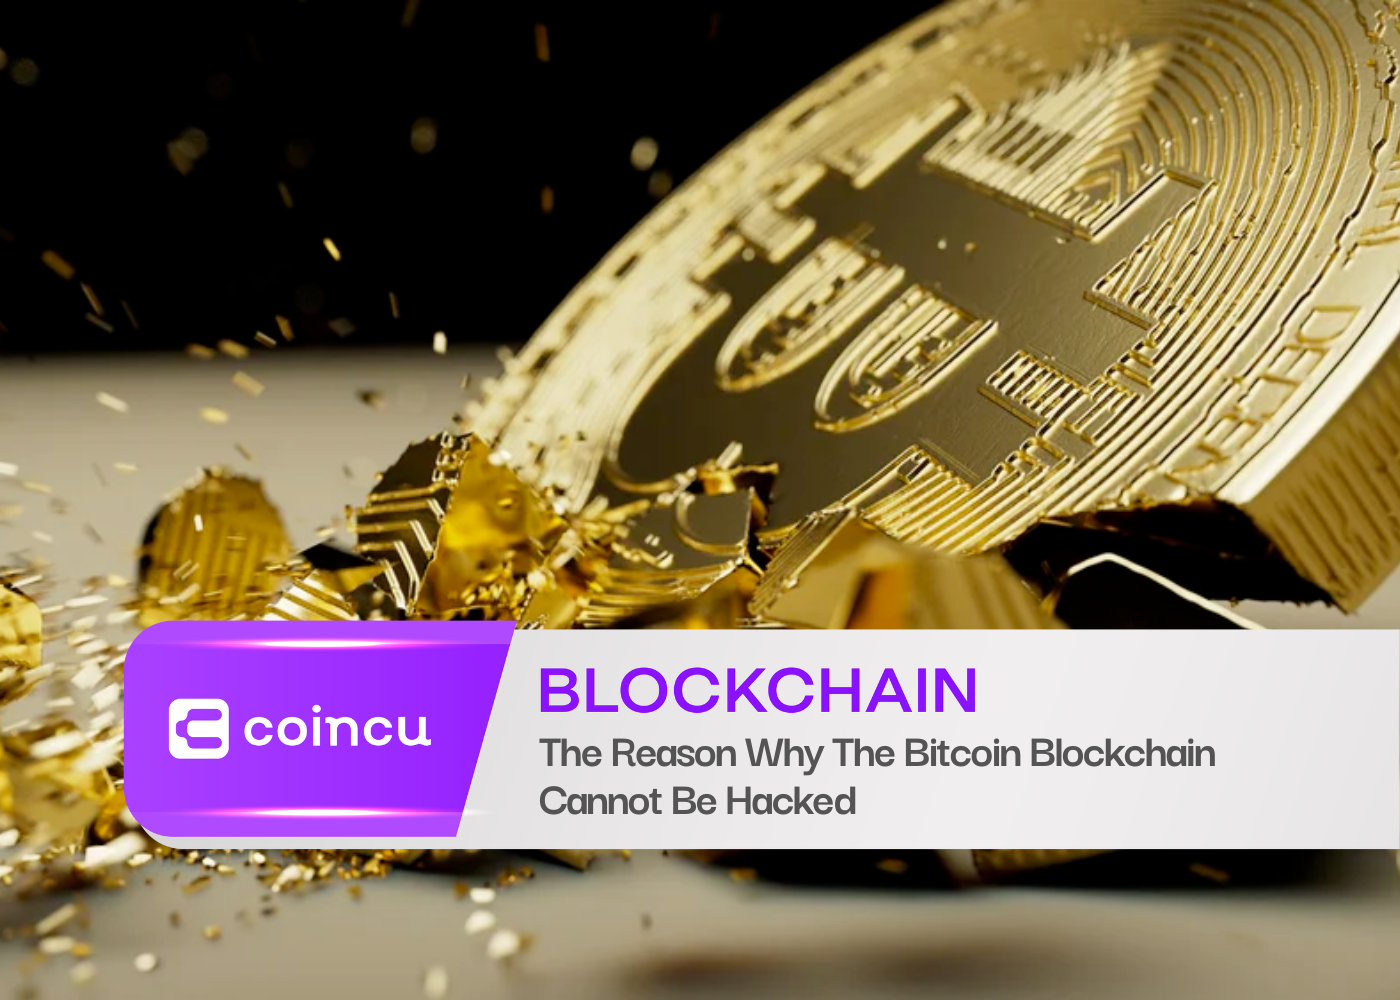 السبب وراء عدم إمكانية اختراق Bitcoin Blockchain